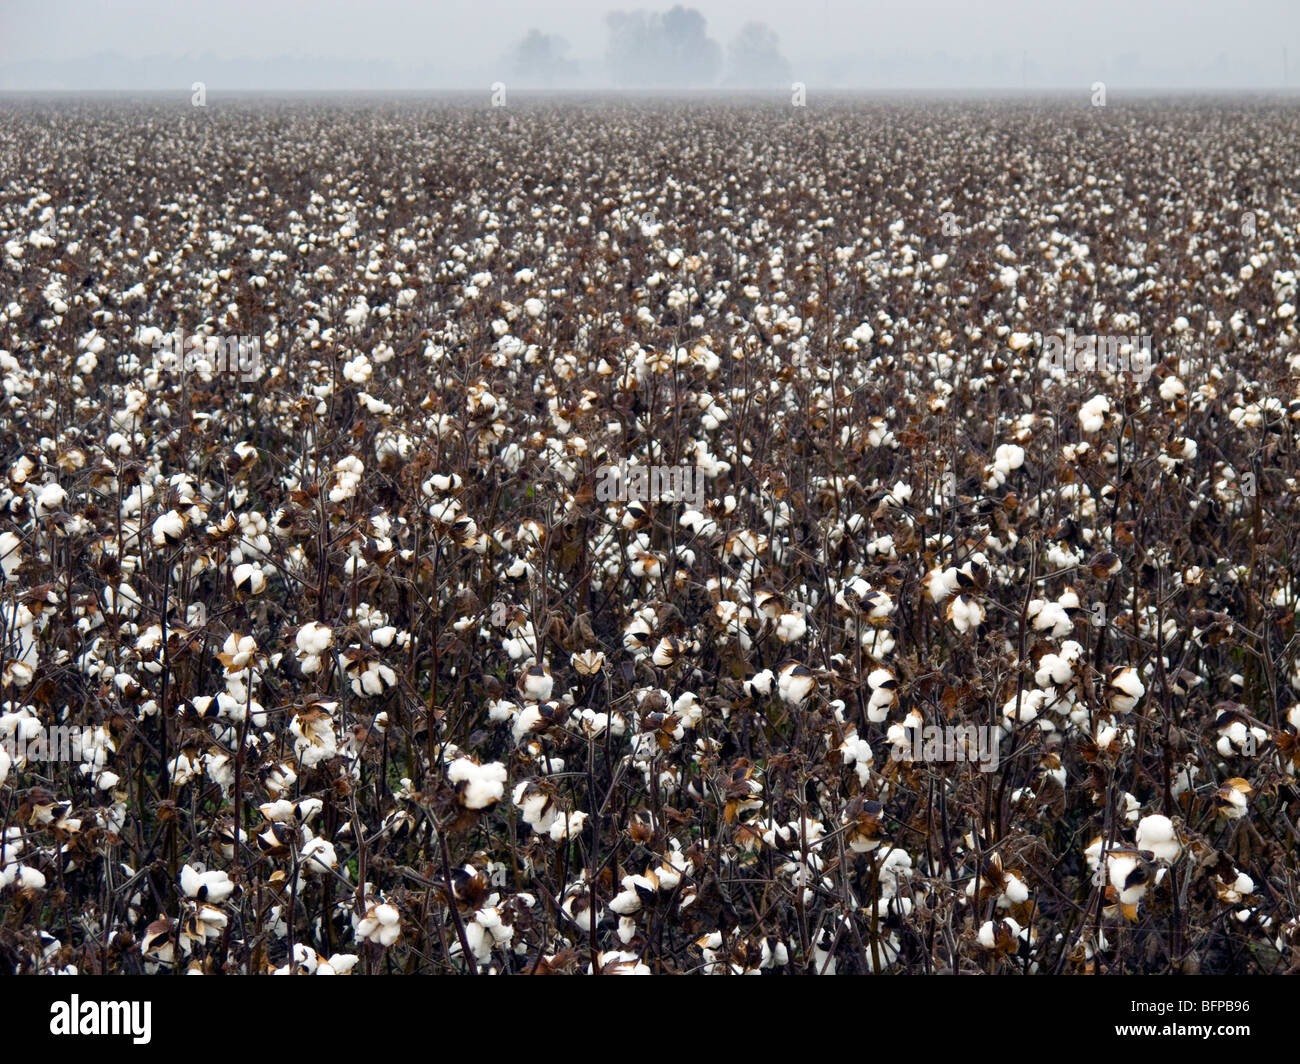 Cotton fields in Arkansas Stock Photo